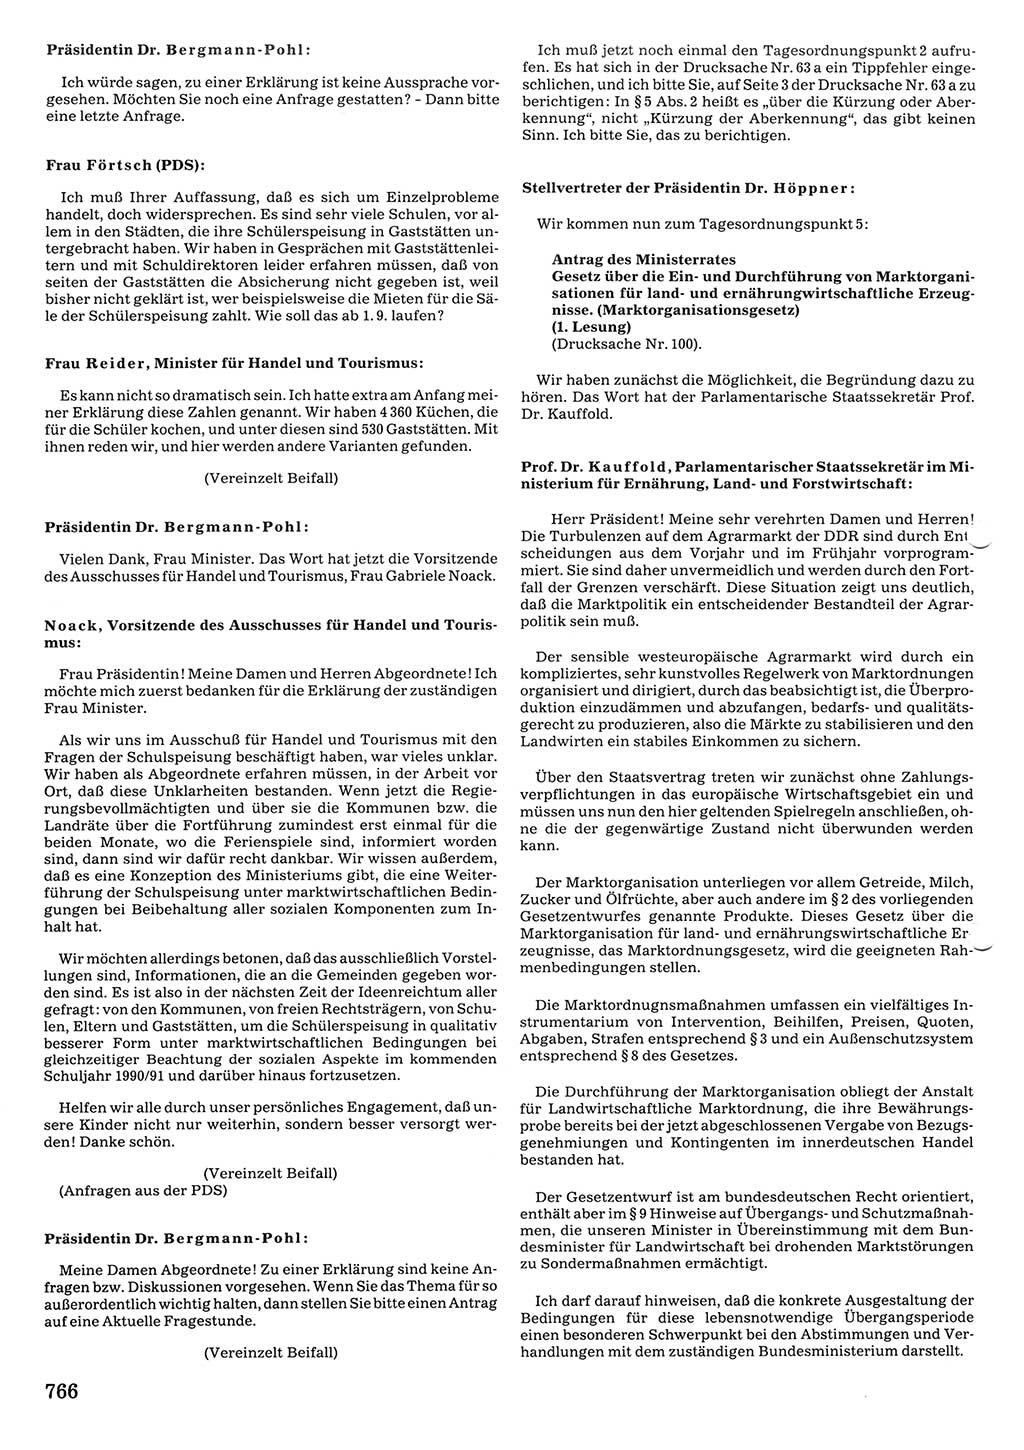 Tagungen der Volkskammer (VK) der Deutschen Demokratischen Republik (DDR), 10. Wahlperiode 1990, Seite 766 (VK. DDR 10. WP. 1990, Prot. Tg. 1-38, 5.4.-2.10.1990, S. 766)